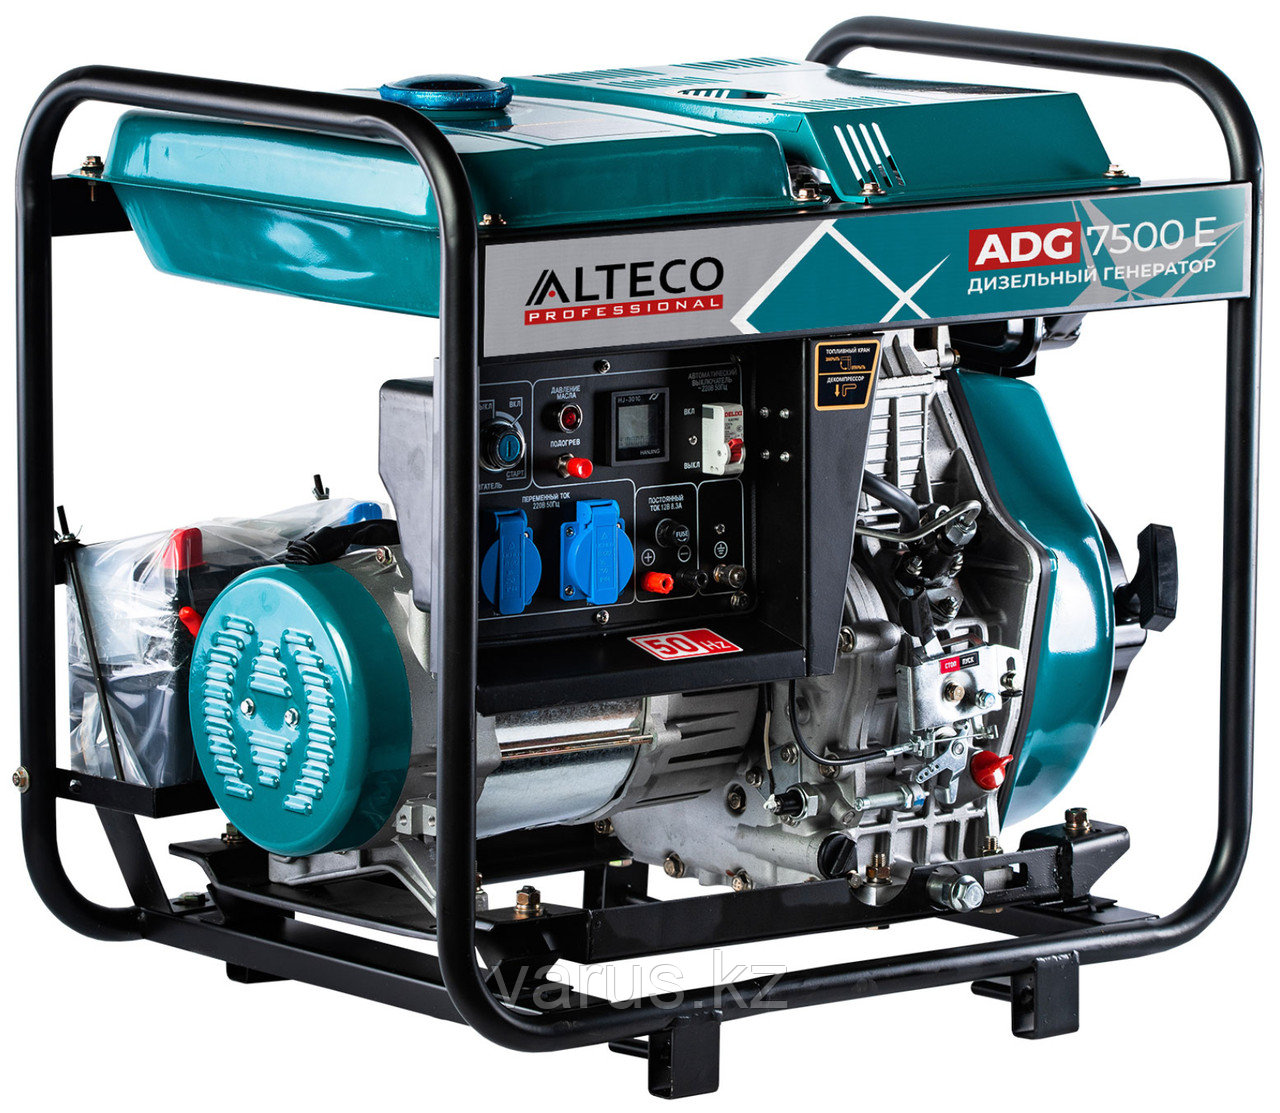 Дизельный генератор Alteco ADG 7500 E